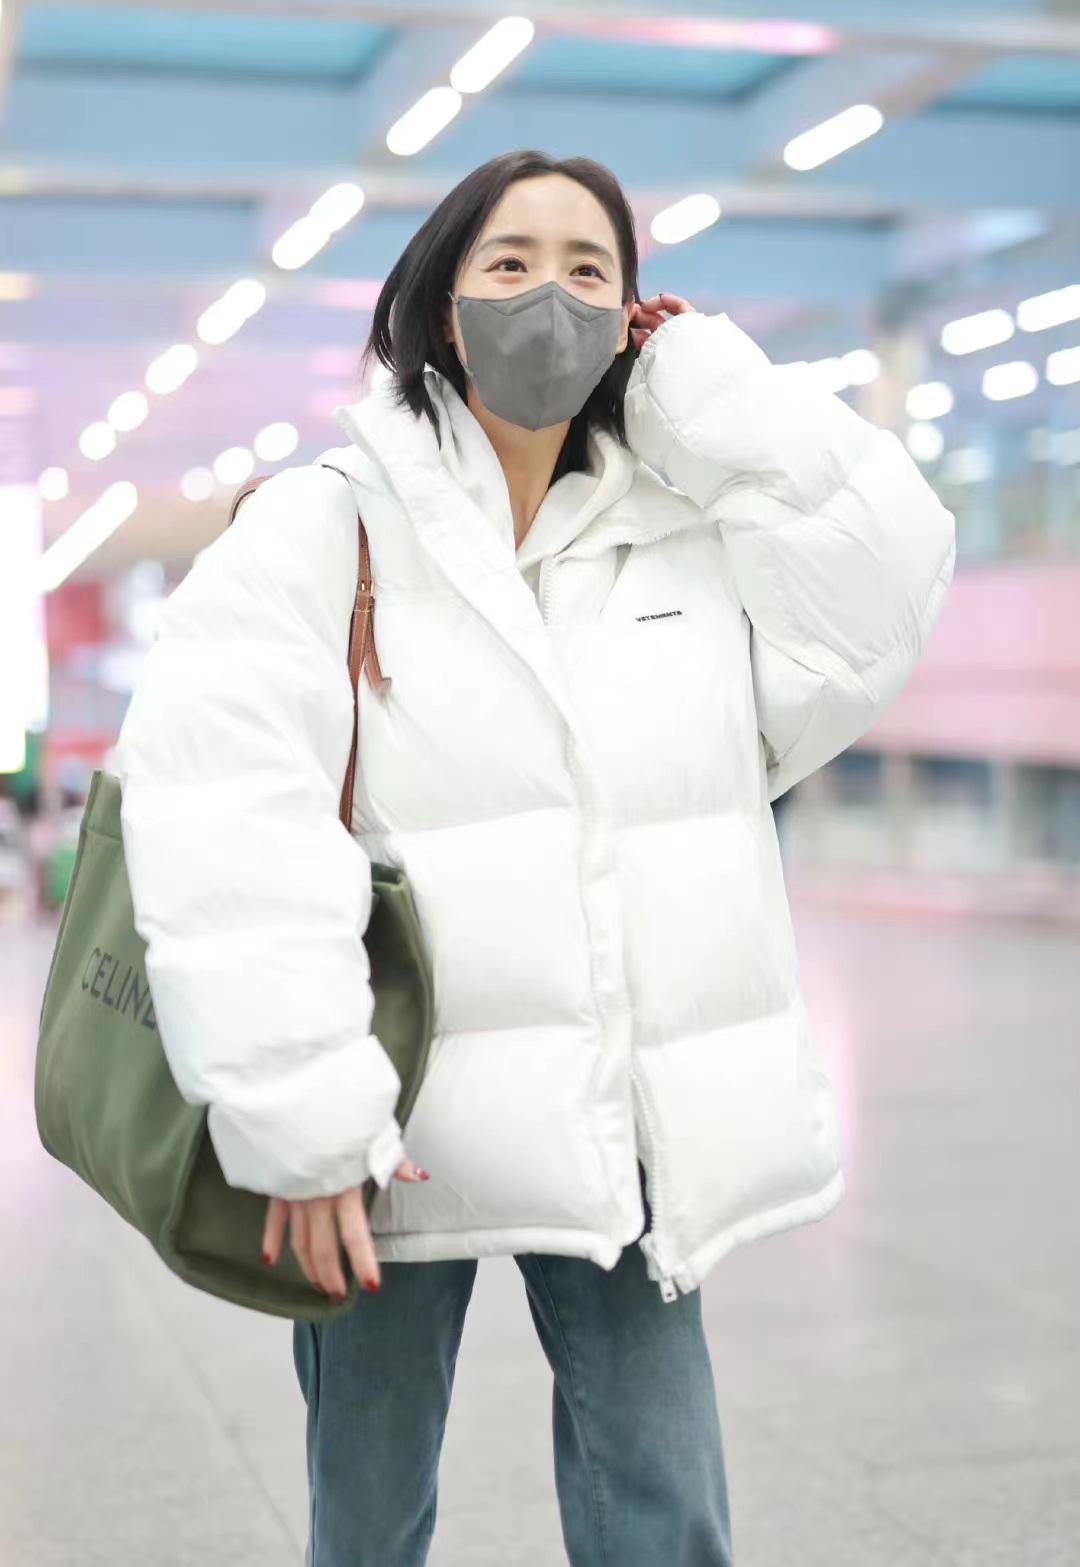 《流浪地球2》女主角王智现身机场,白色羽绒服配牛仔裤,休闲时尚